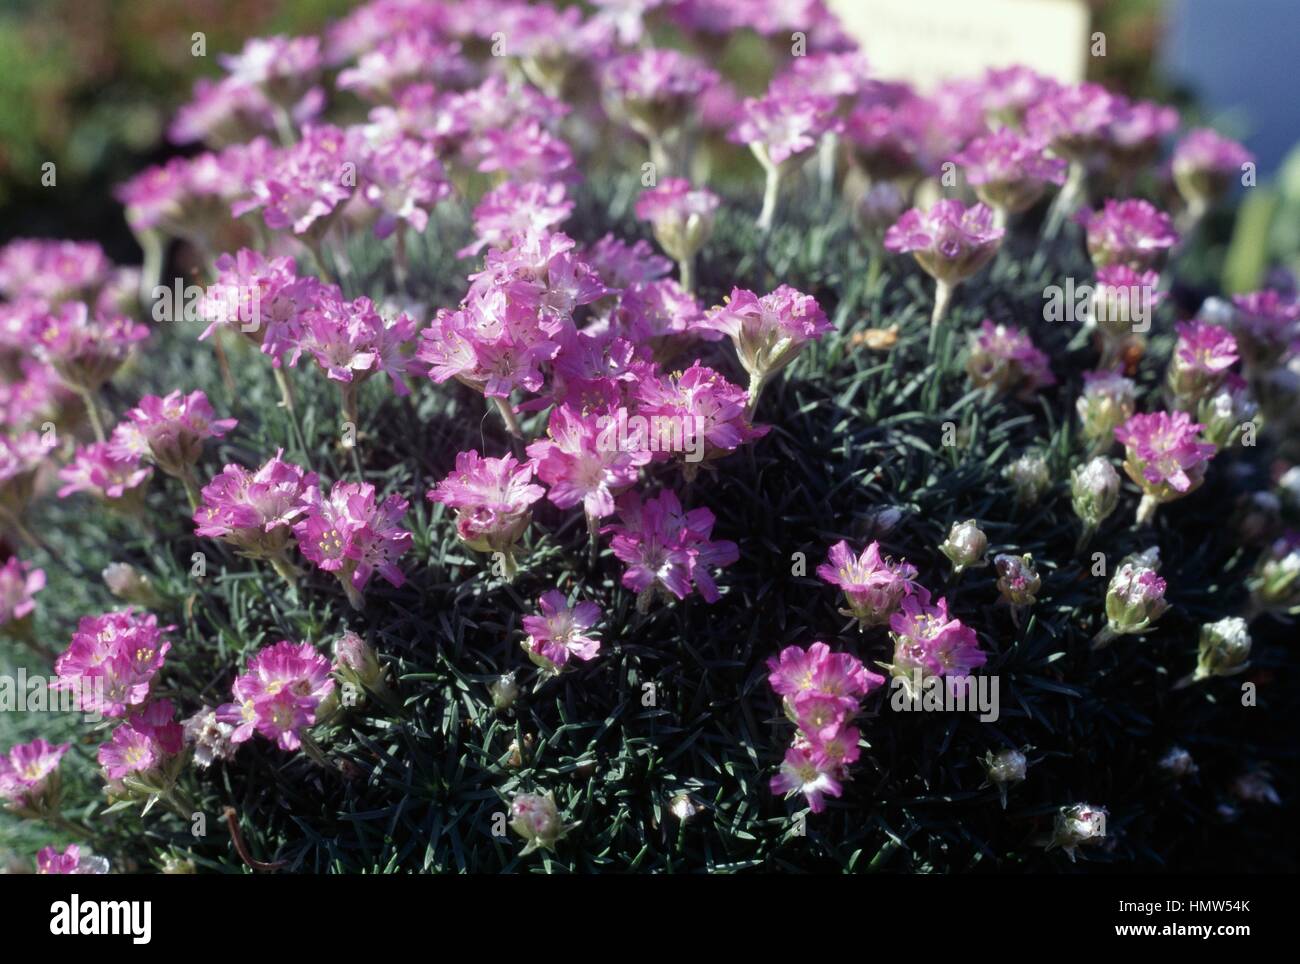 Dwarf Thrift or Juniper-leaved Thrift (Armeria caespitosa or Armeria juniperifolia), Plumbaginaceae. Stock Photo